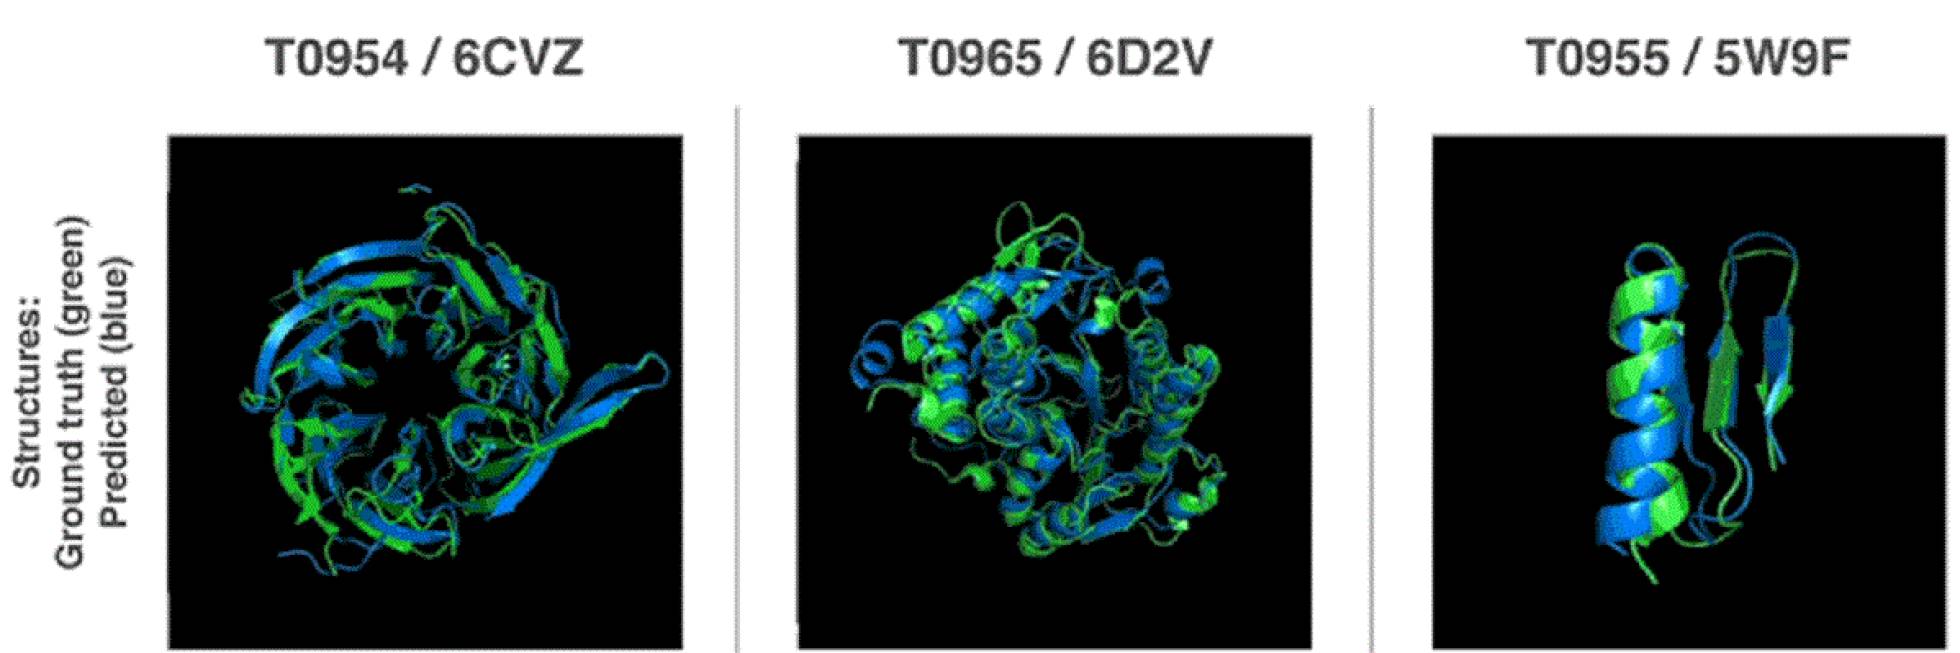  Ilustración de la forma 3D de proteínas del concurso. En verde, la estructura real de las moléculas, en azul, la estructura que predijo el algoritmo AlphaFold. DeepMind 